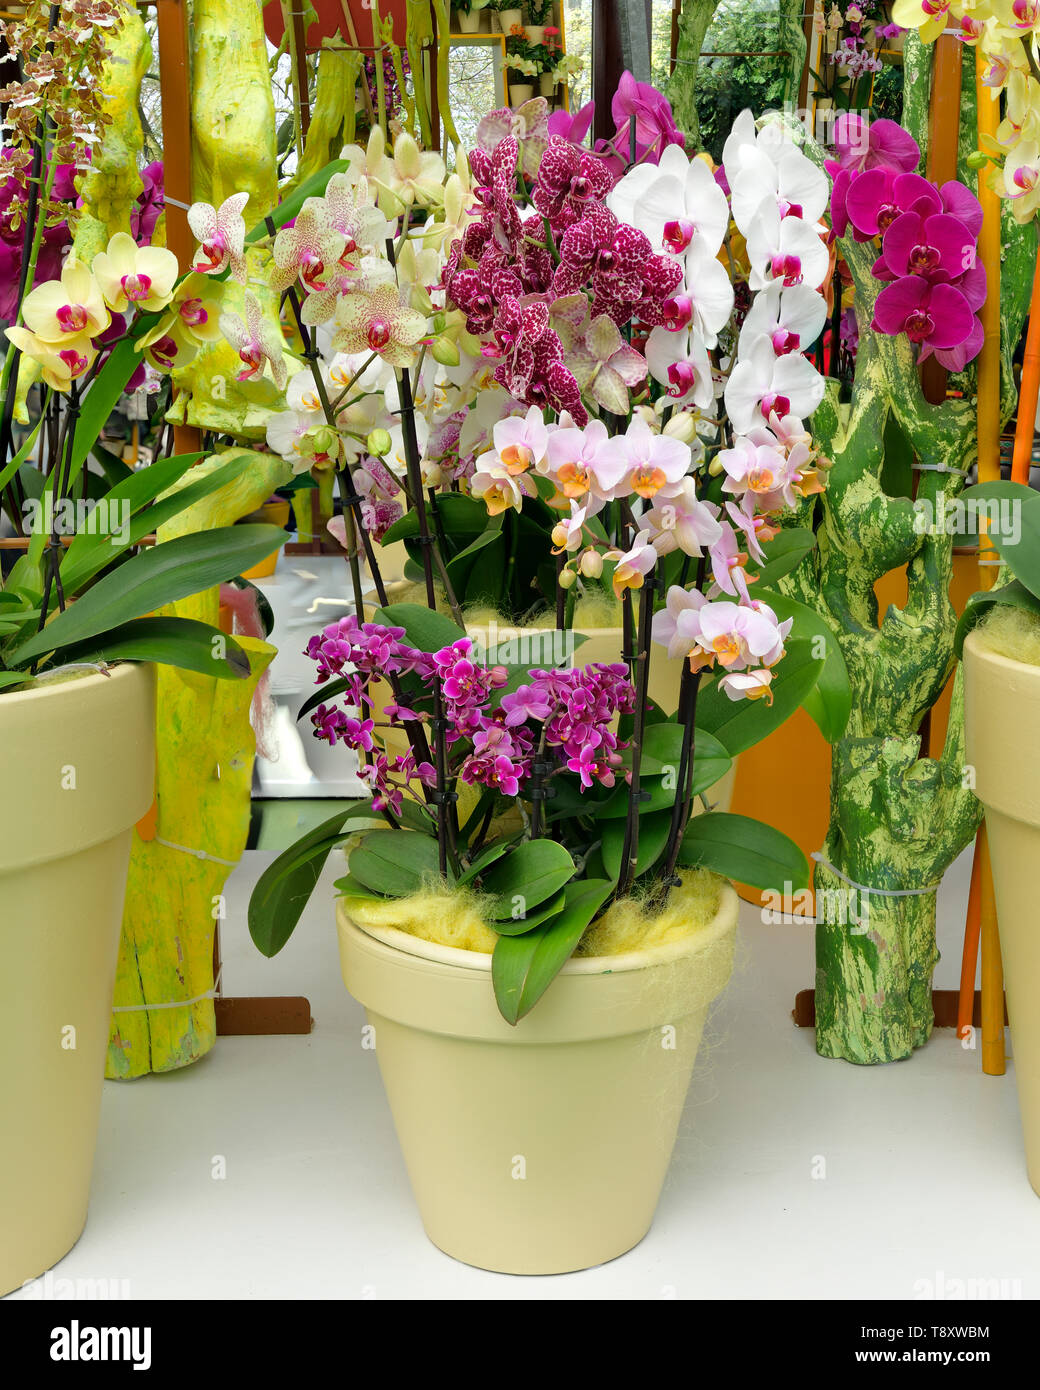 Photographié dans la plante orchidée afficher dans Kenkenhof Park Lisse Pays-Bas 2019 Banque D'Images